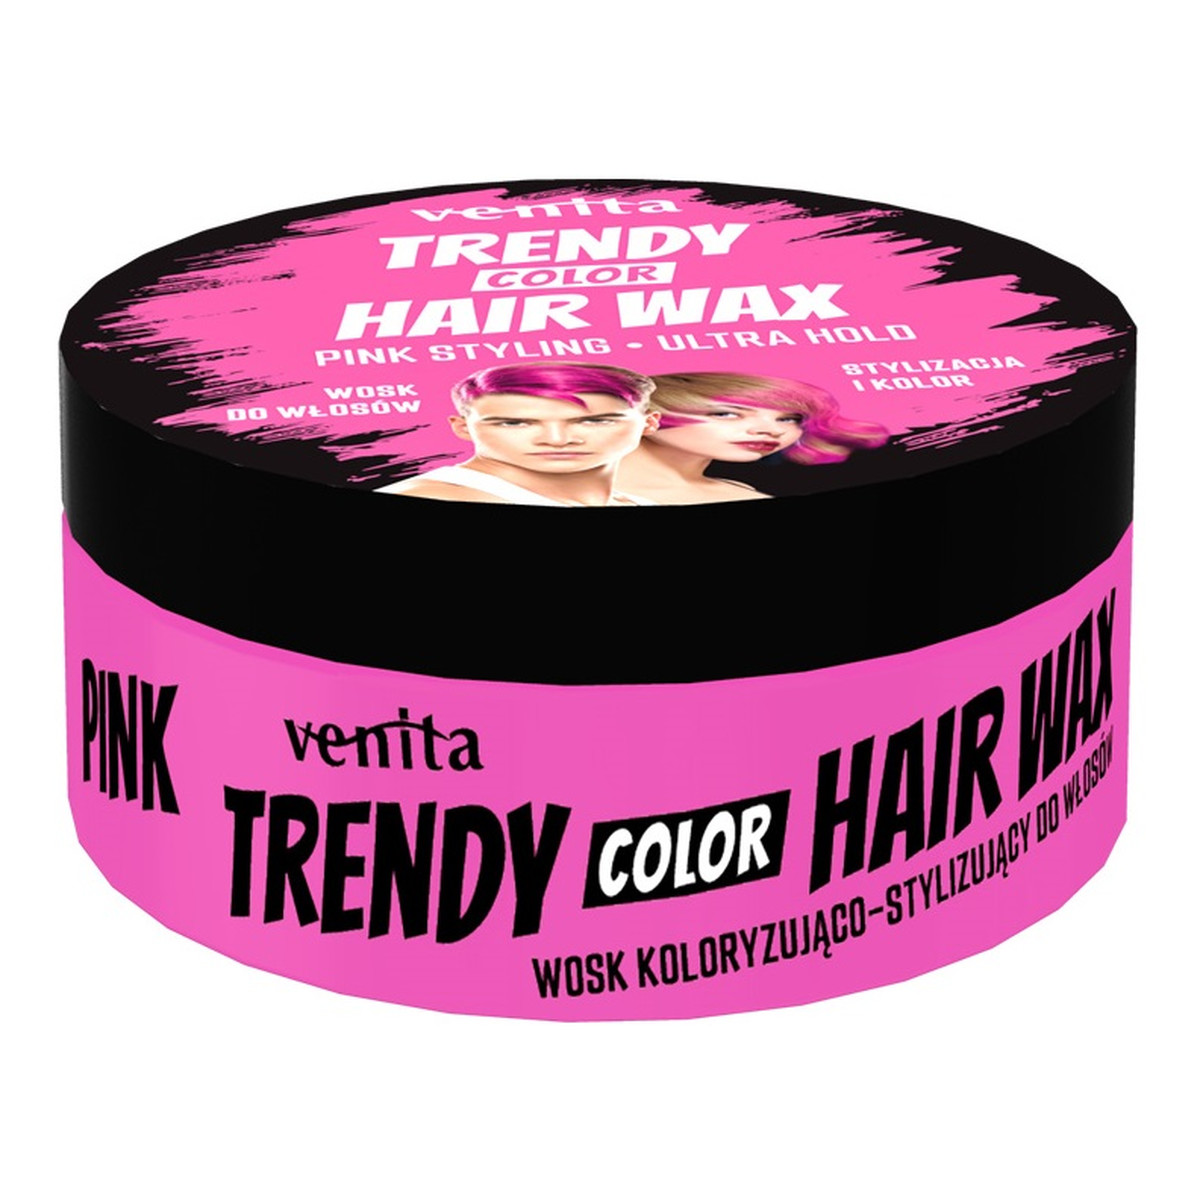 Venita Trendy color hair wax koloryzujący wosk do stylizacji włosów 75g